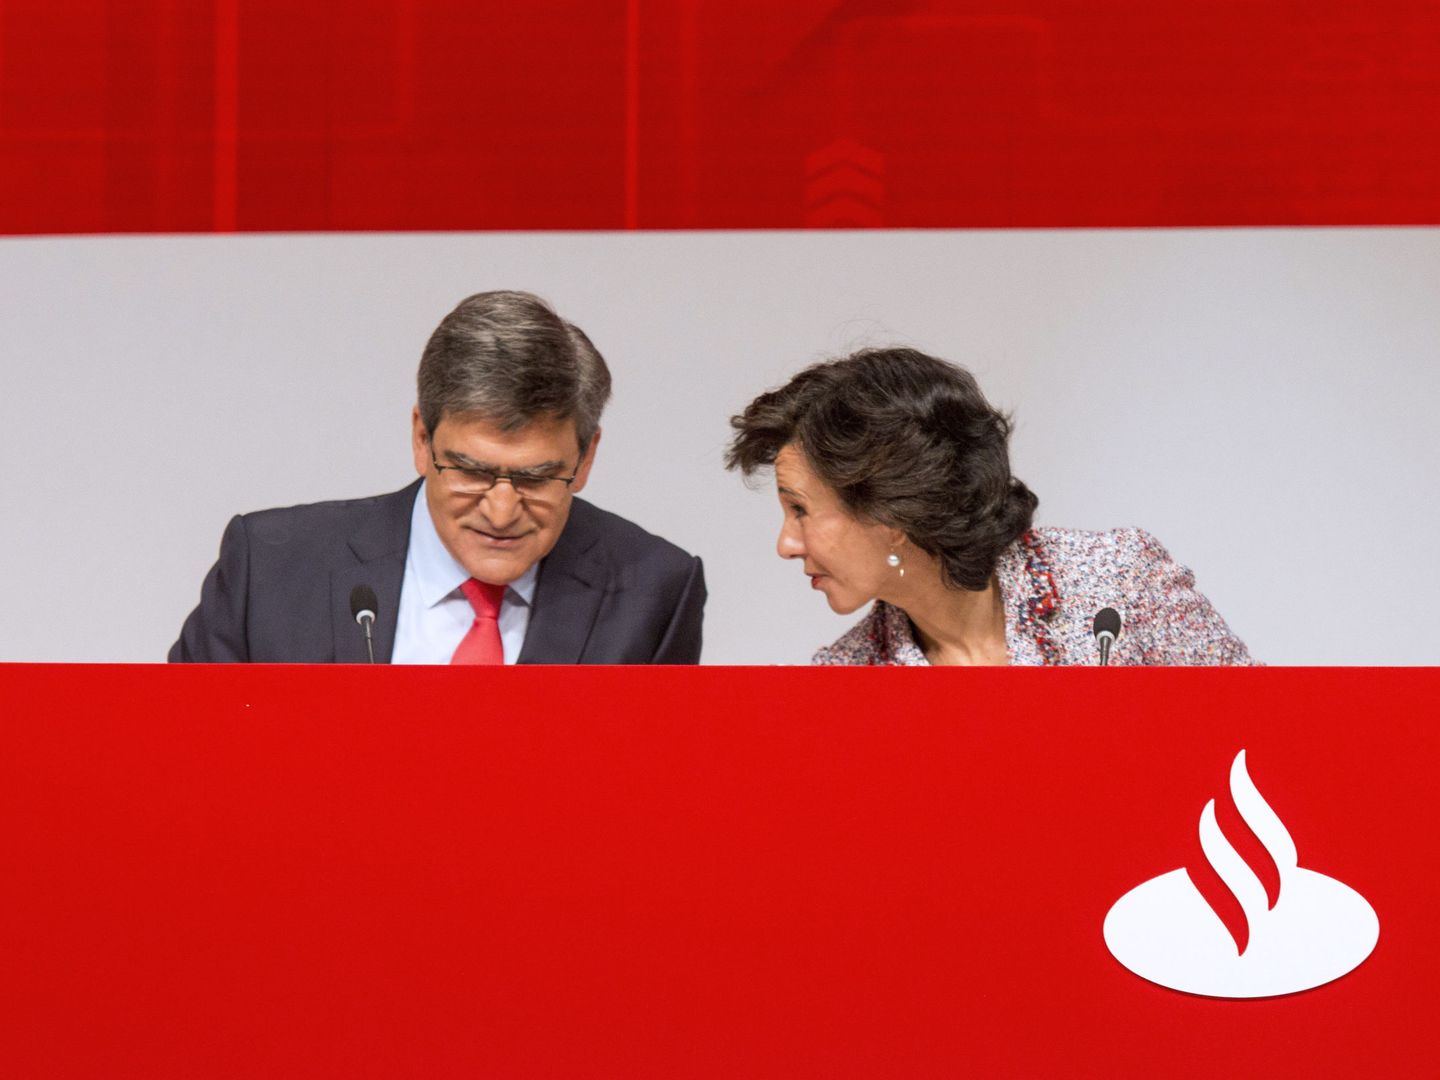 La presidenta del Banco Santander, Ana Botín, conversa con el consejero delegado, José Luis Álvarez Álvarez. (EFE)